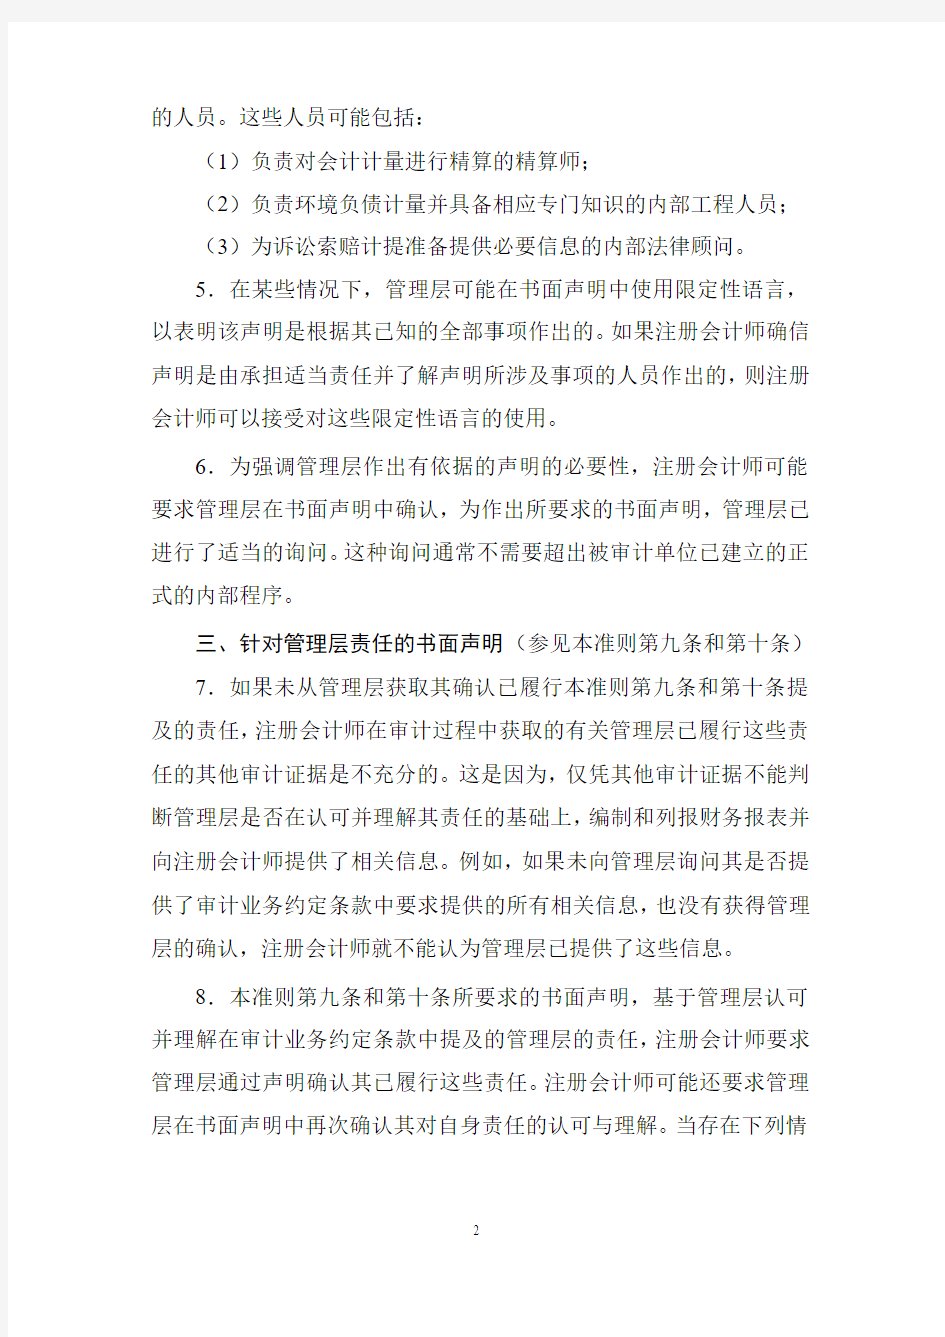 《中国注册会计师审计准则第1341号——书面声明》应用指南2019